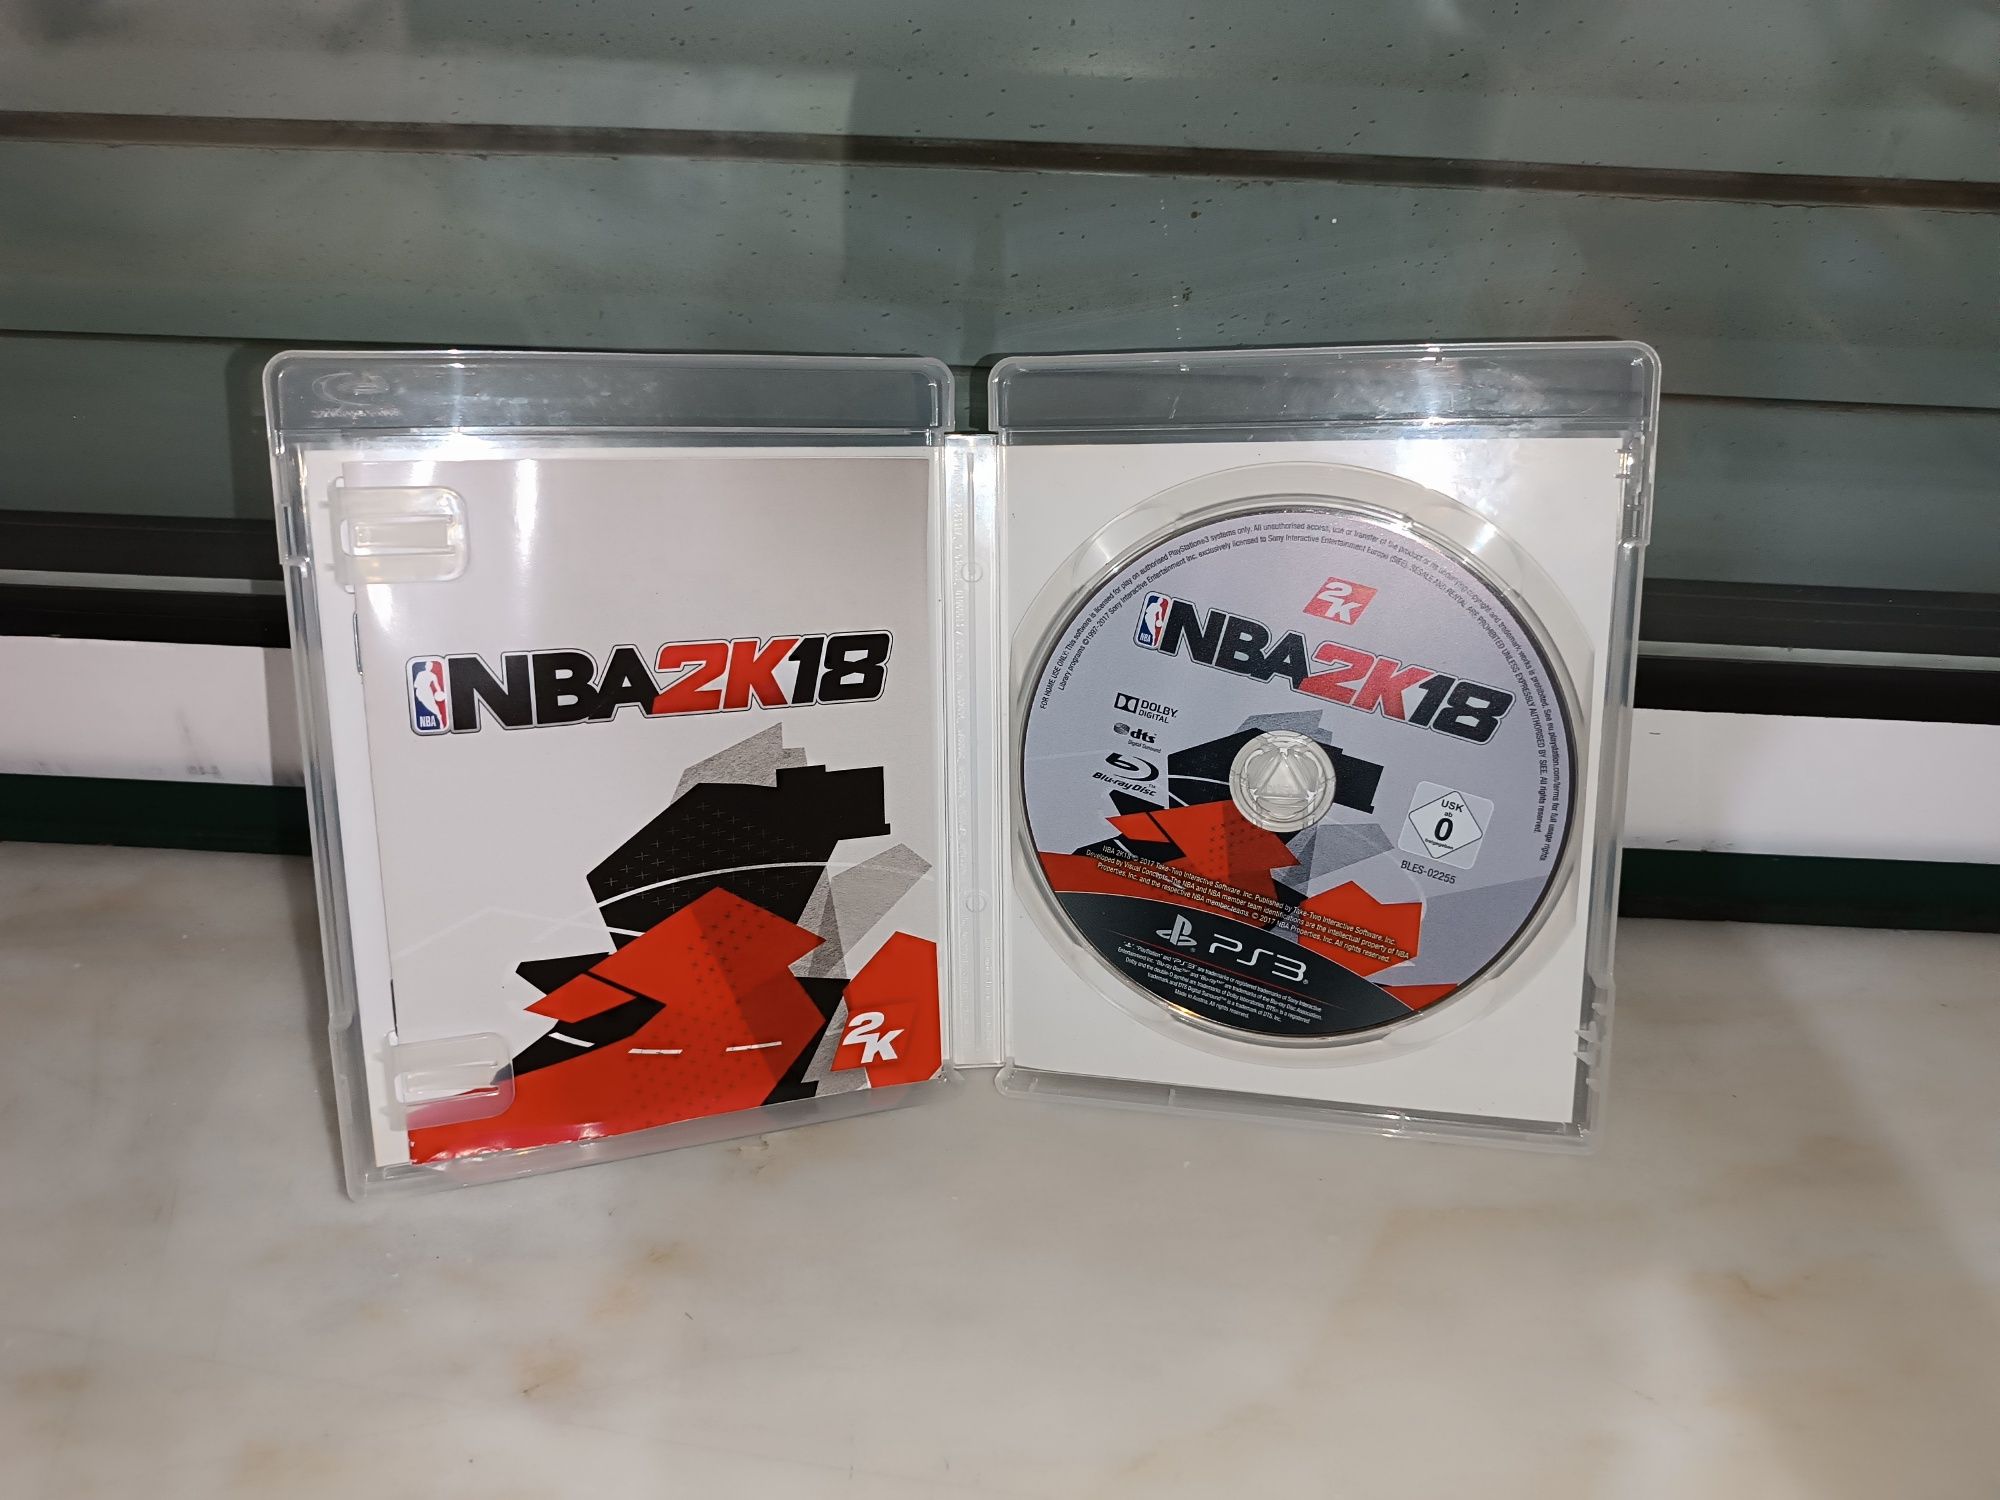 NBA2k18 PlayStation 3